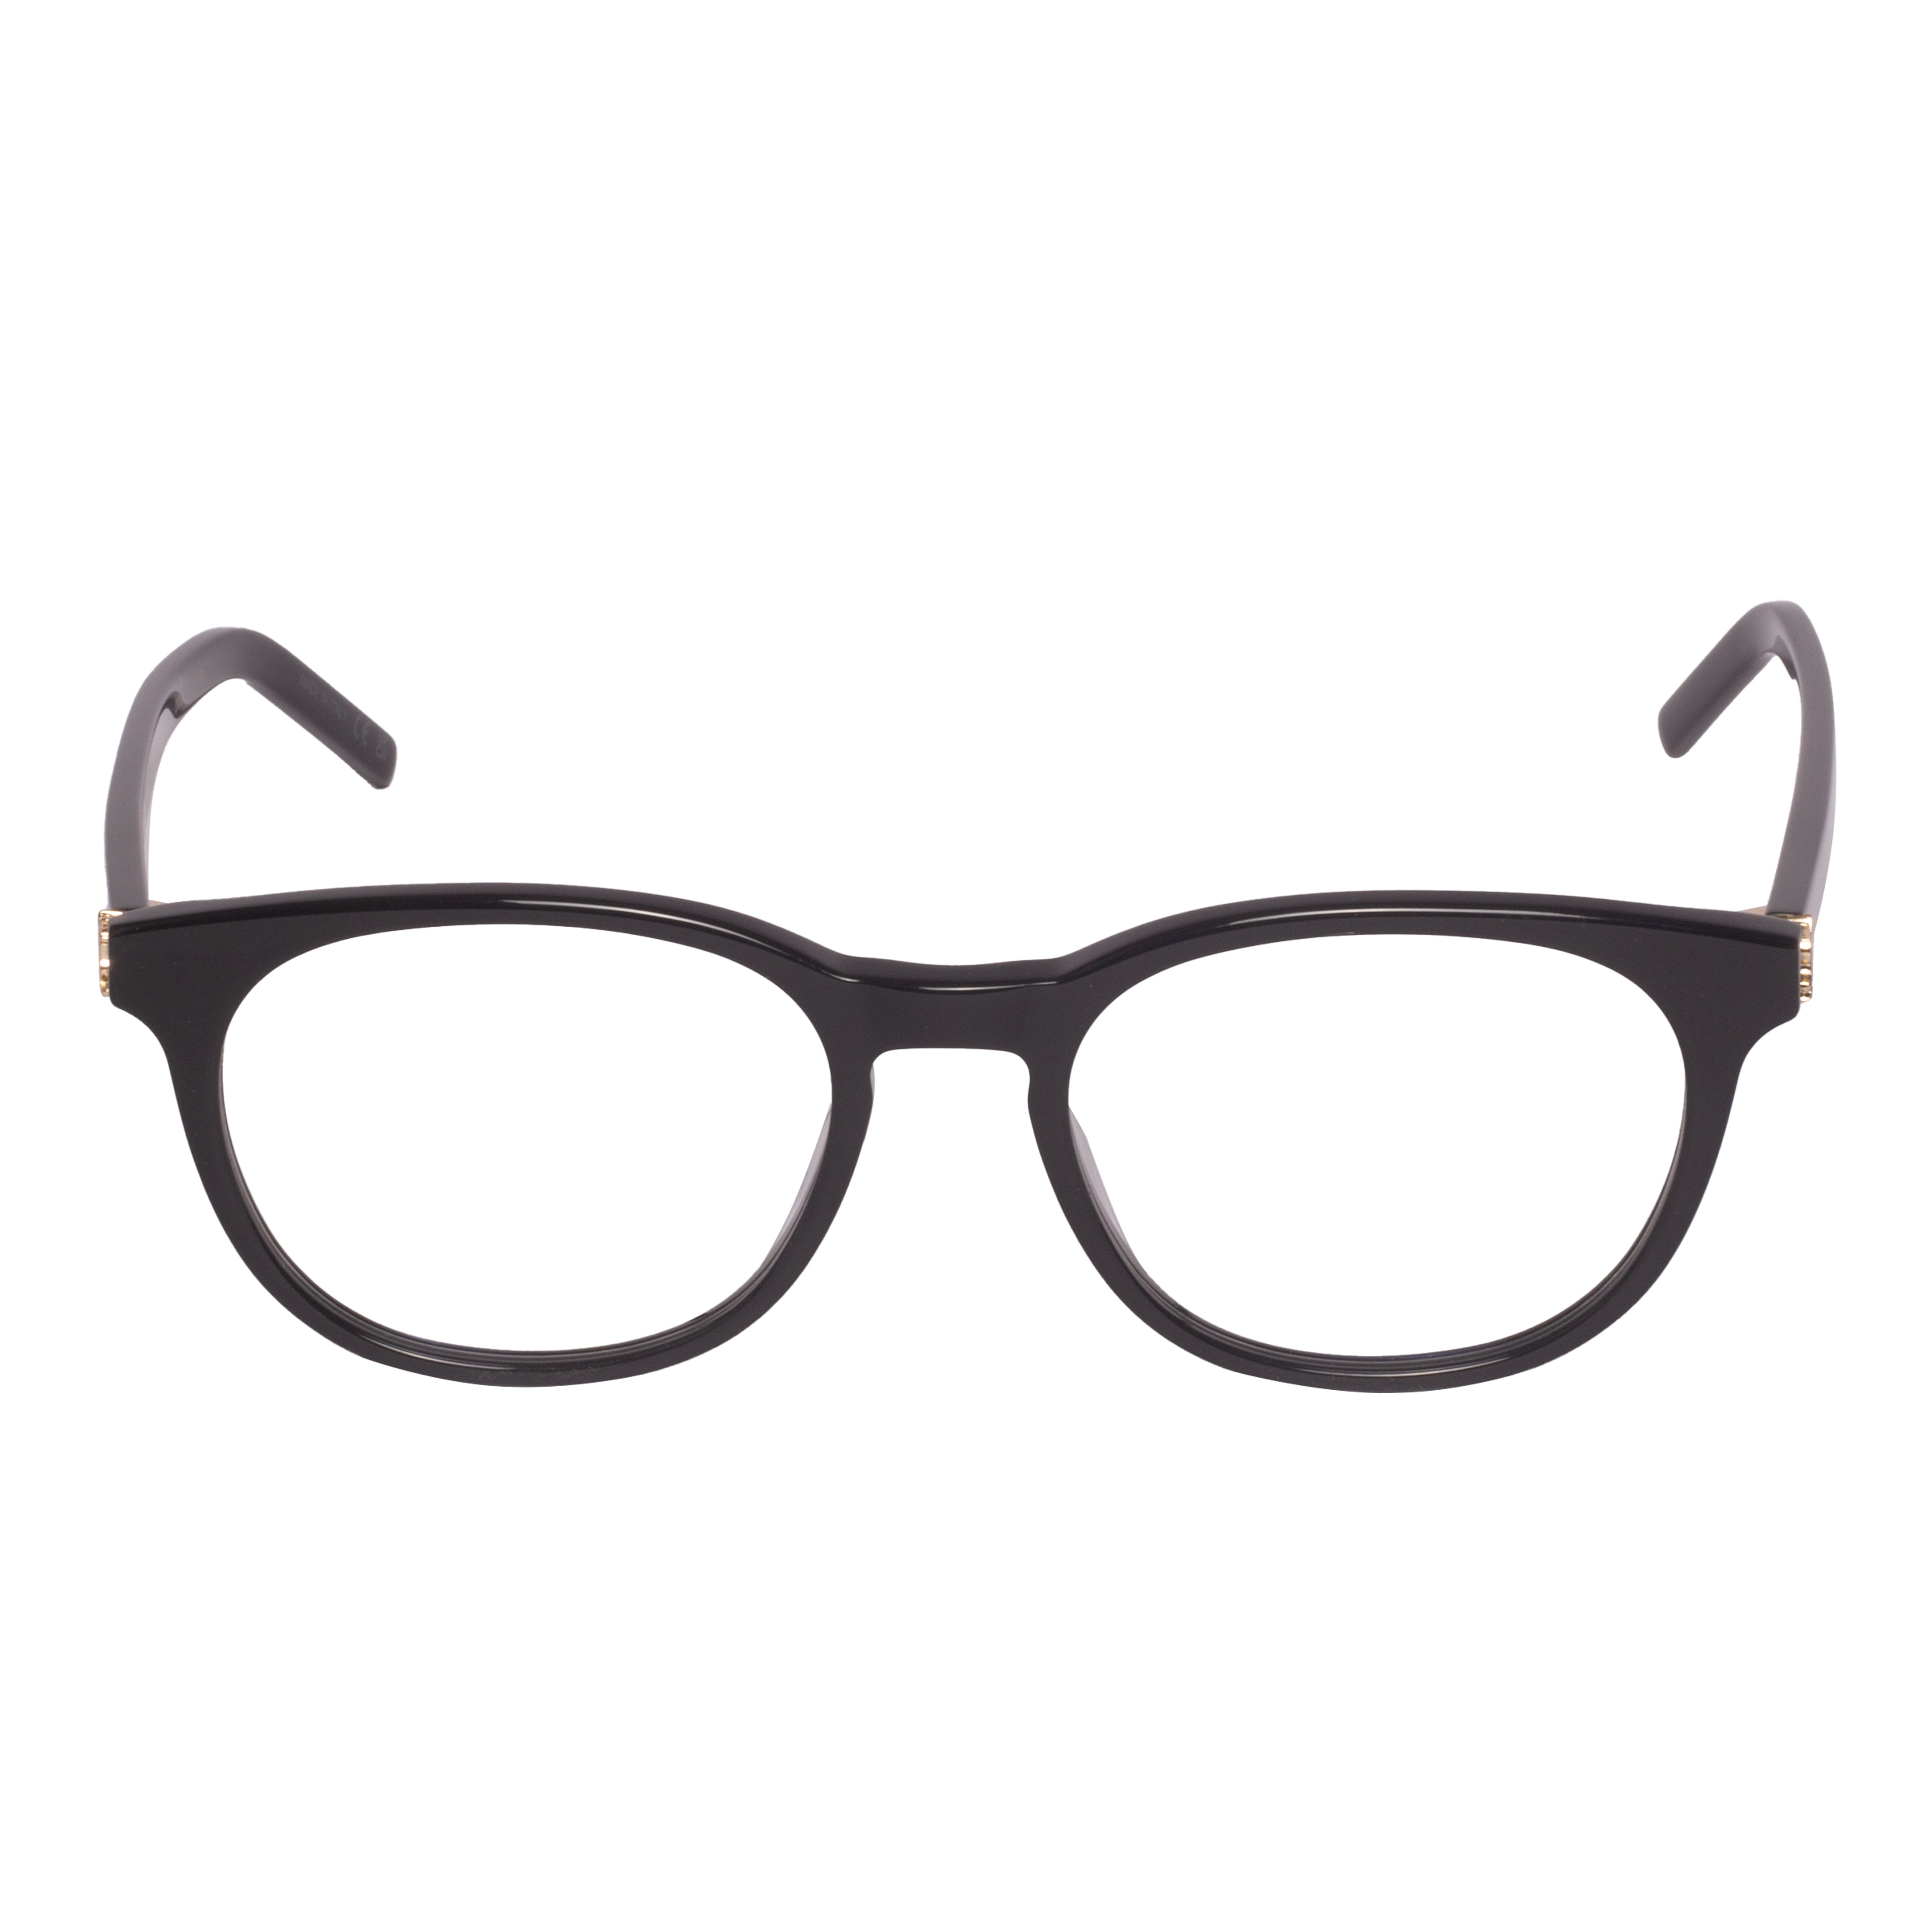 Saint Laurent-SL M111-52-001 Eyeglasses - Premium Eyeglasses from Saint Laurent - Just Rs. 23300! Shop now at Laxmi Opticians